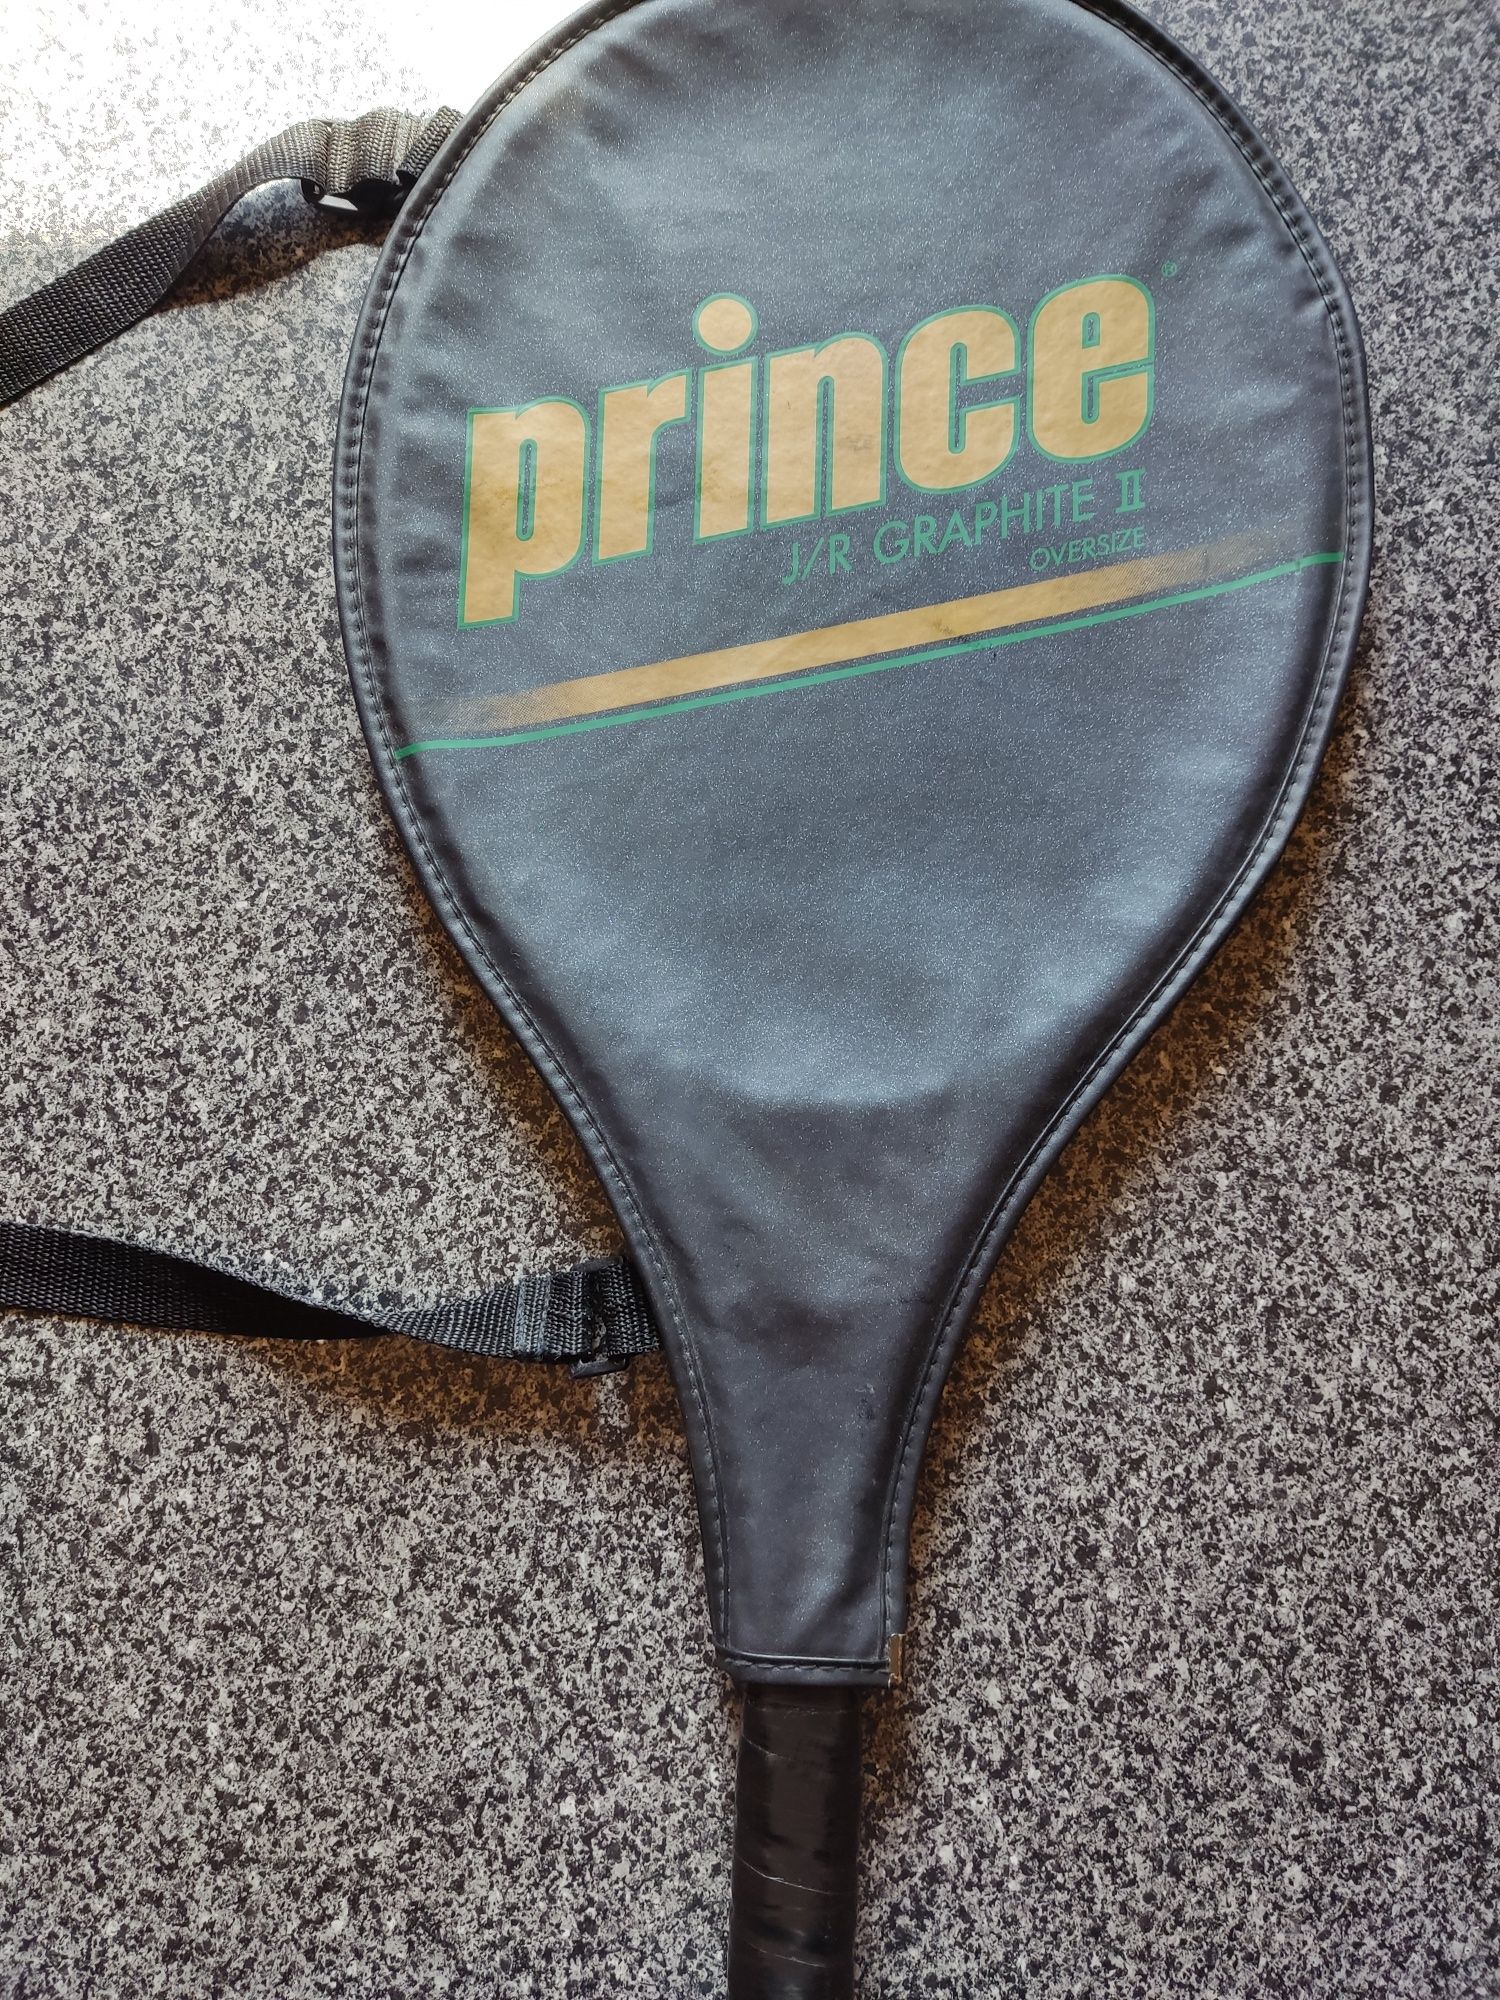 Продам ракетку для болшого тенниса Prince J/R Graphite ll